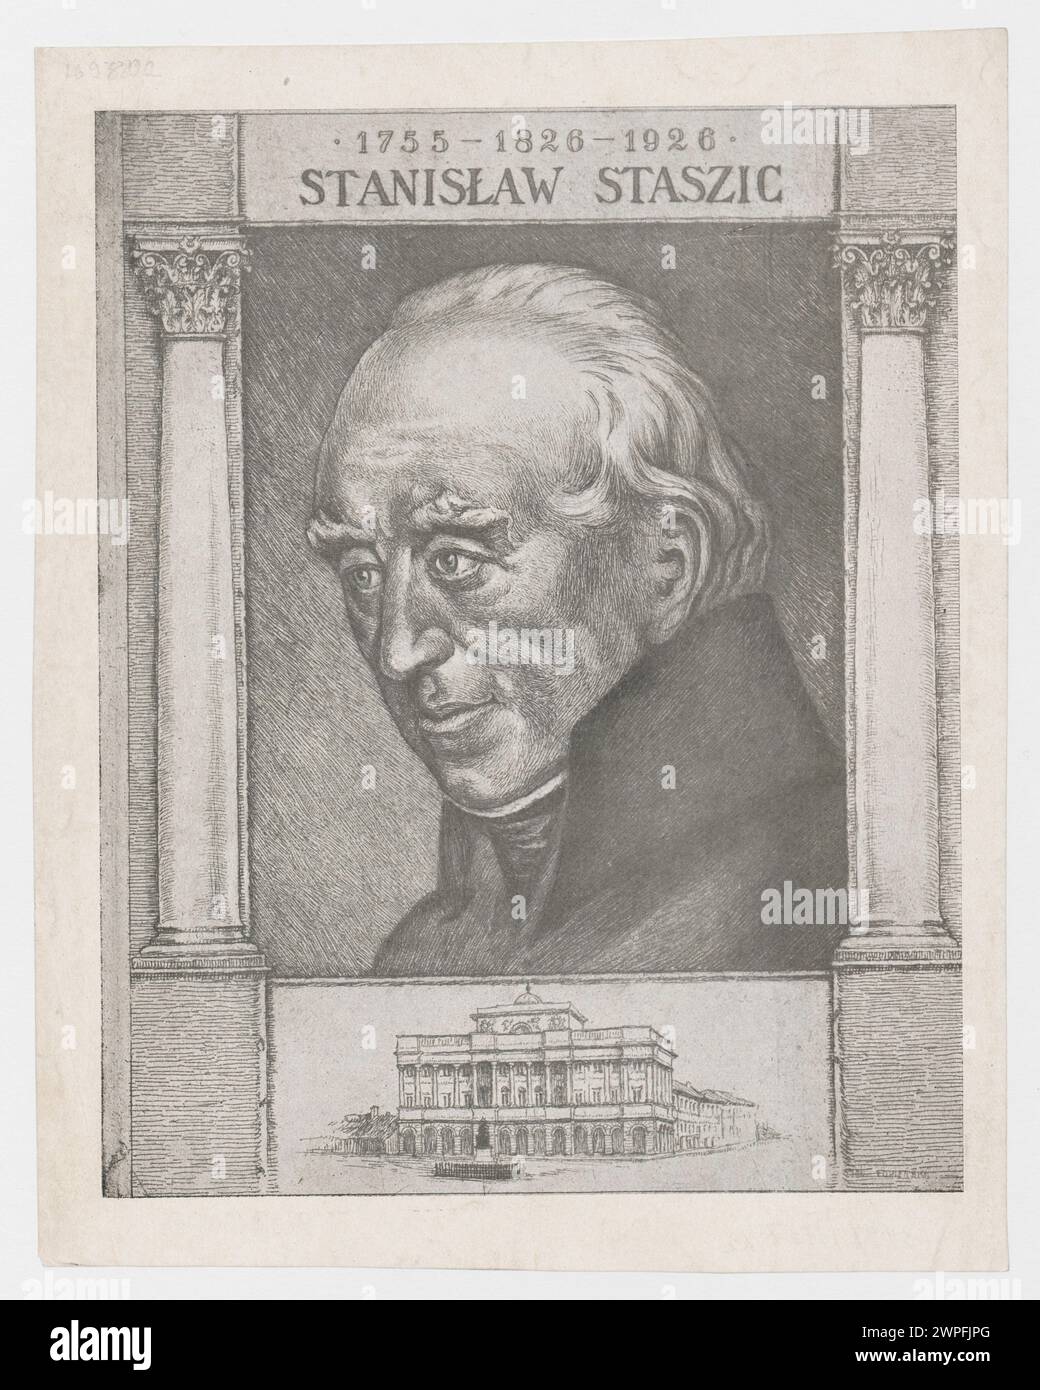 Ritratto di Stanis Aw Staszica con vista di Pał Staszic a Varsavia; sconosciuto, SCI, Ignacy (1865-1941); 1926 (1926-00-00-1926-00-00); Krakowskie Przedmieście (Varsavia - via), Nowy Świat (Varsavia - via), Palazzo Staszica (Varsavia), Staszic, Stanisław (1755-1826), Staszic, Stanisław (1755-1826) - iconografia, Varsavia (Voivodato della Masovia), grafica Polonia, colonne (archite. Foto Stock